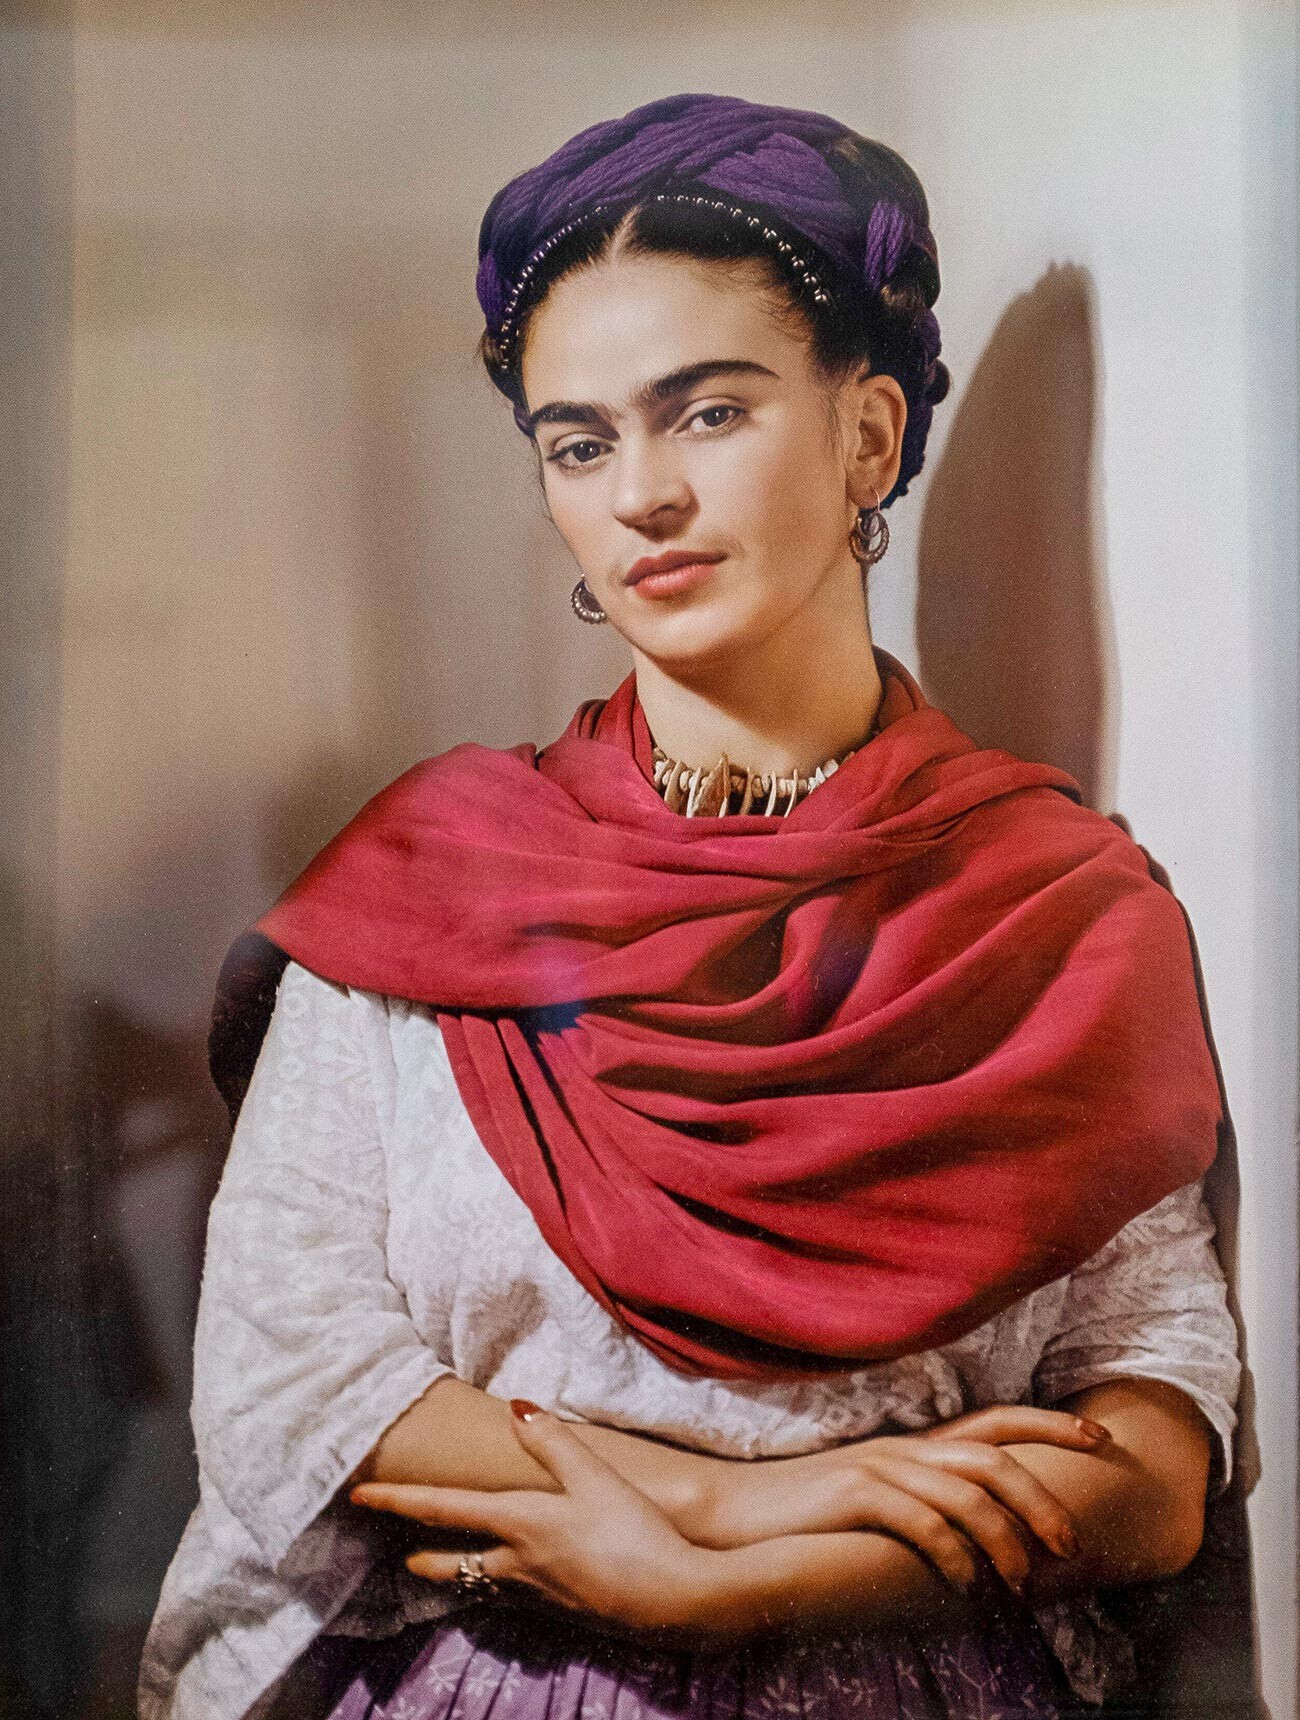 Frida Kahlo Museum, Mexico City. 